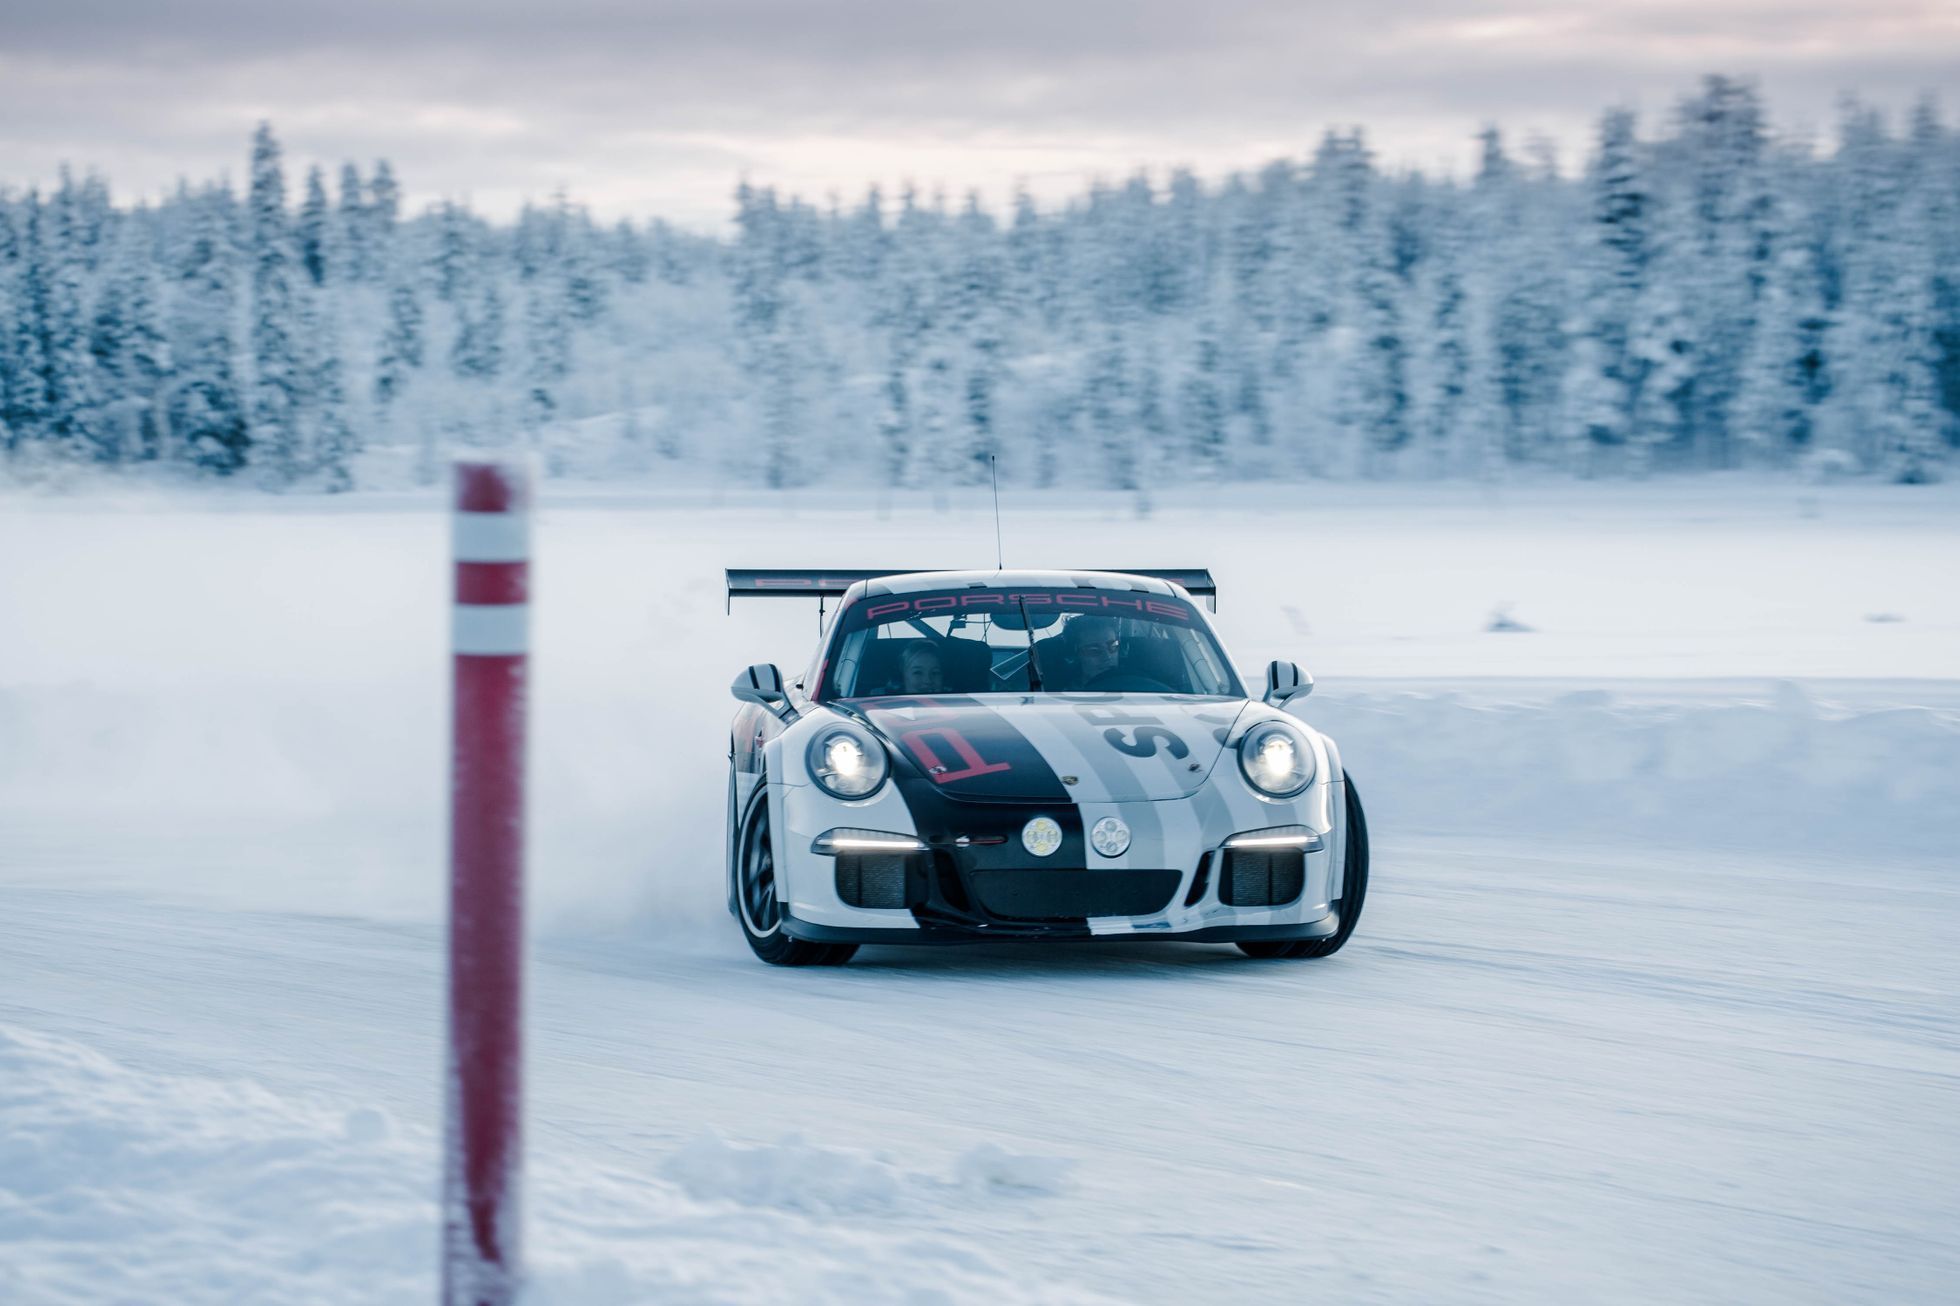 Škola jízdy na ledu s Porsche za polárním kruhem